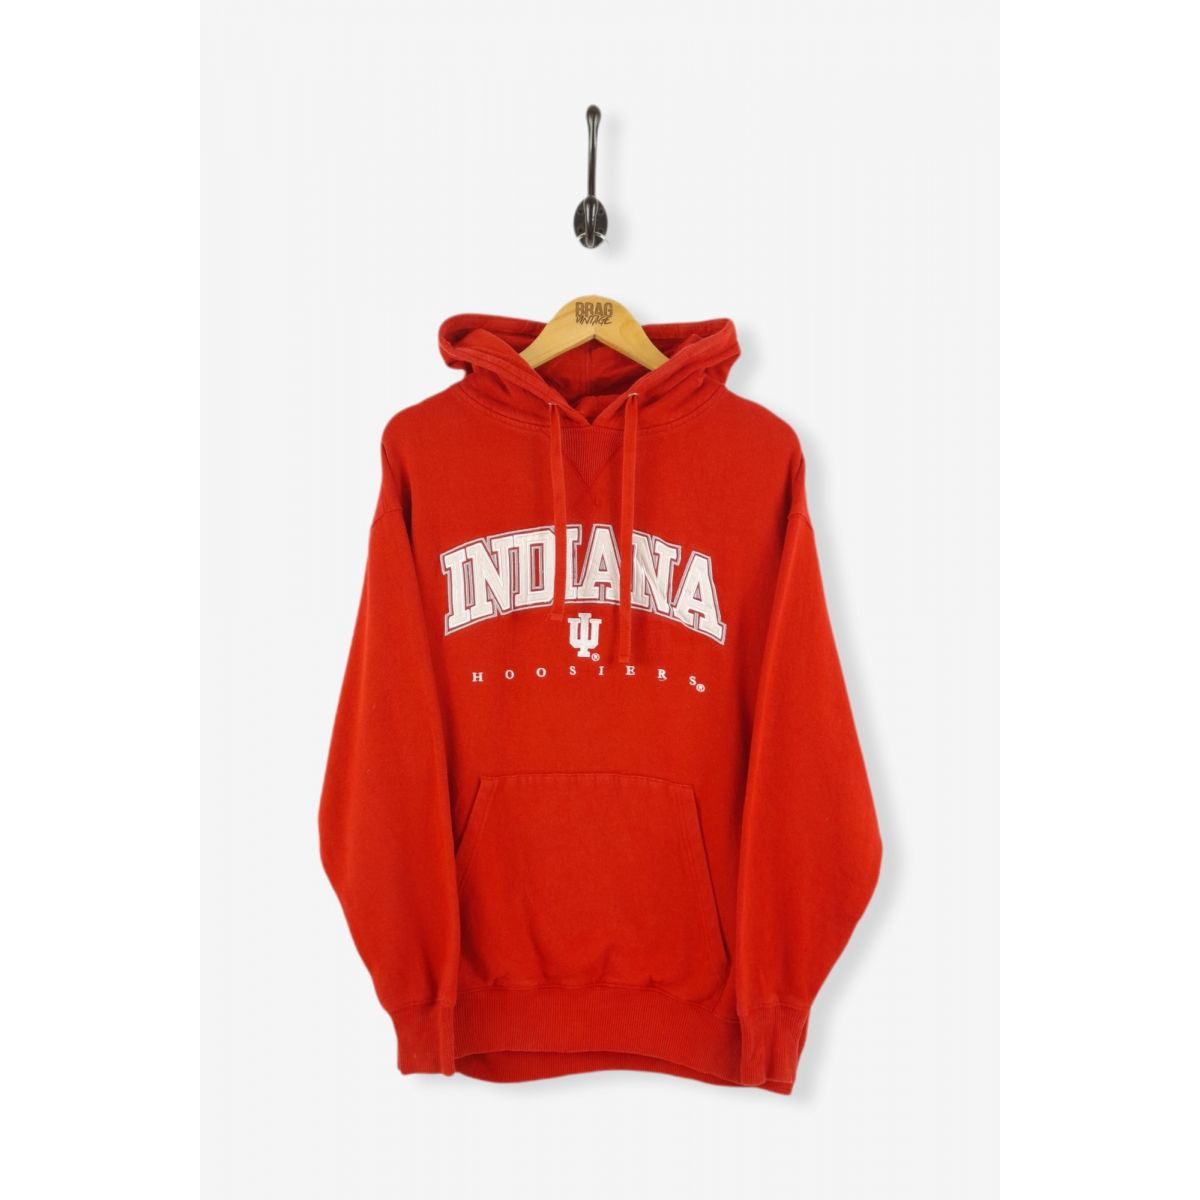 Vintage Indiana Hoosiers Hoodie Red Large